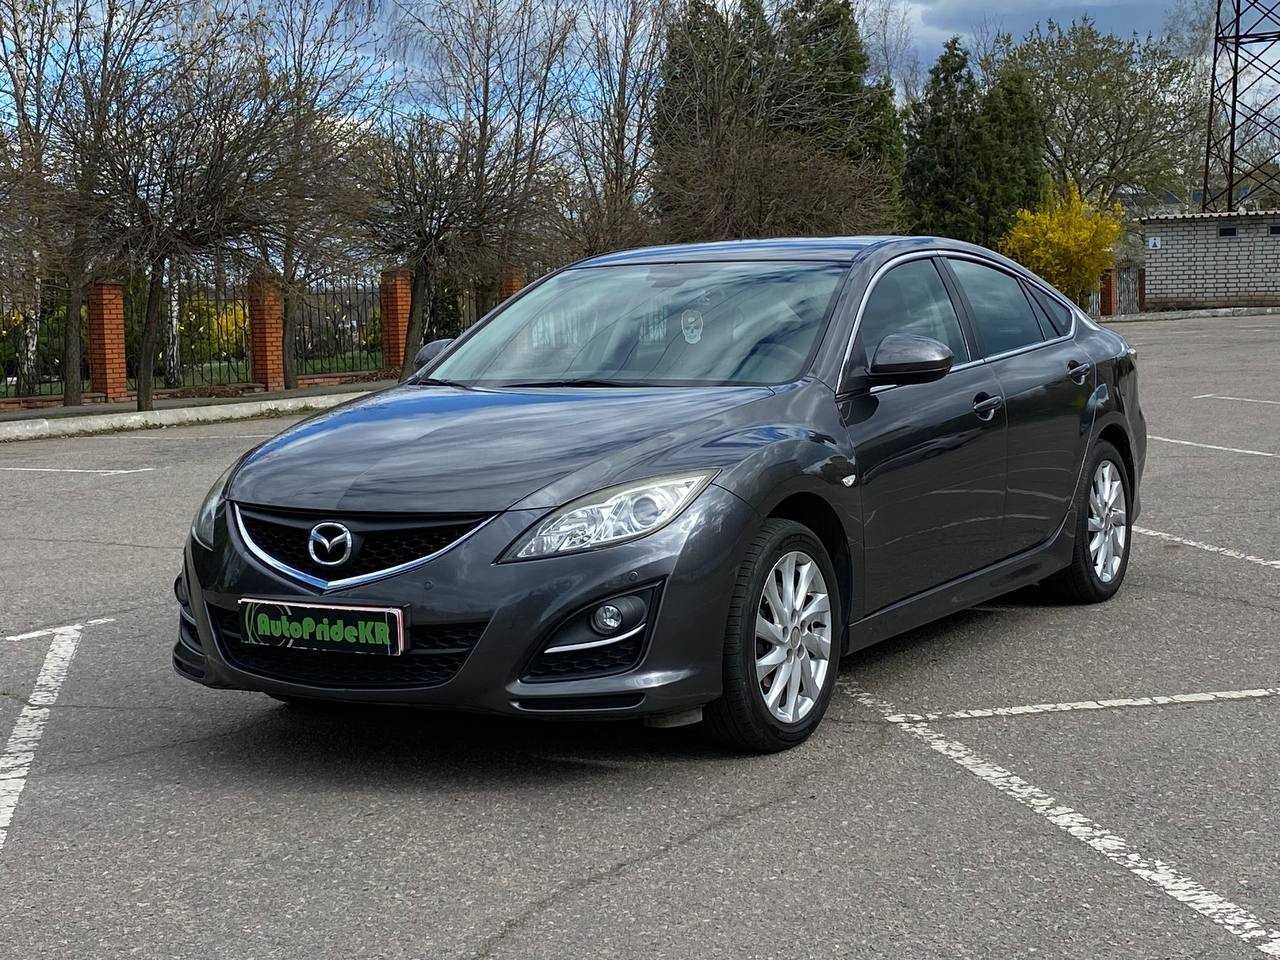 Mazda 6, 1,8 бензин, 2011р, обмін (перший внесок від 20%)